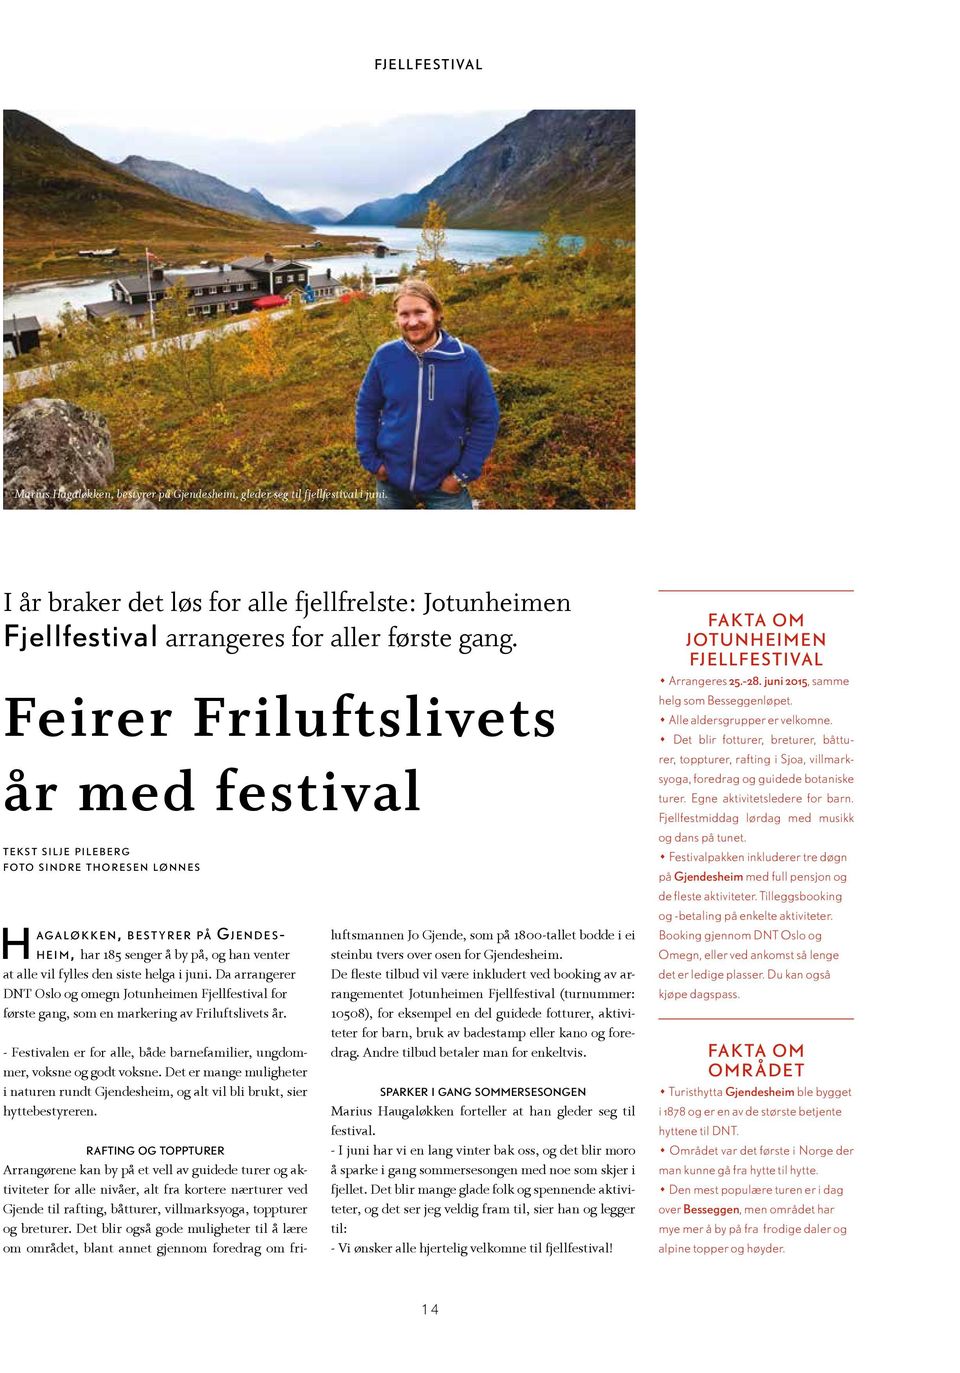 venter at alle vil fylles den siste helga i juni. Da arrangerer DNT Oslo og omegn Jotunheimen Fjellfestival for første gang, som en markering av Friluftslivets år.